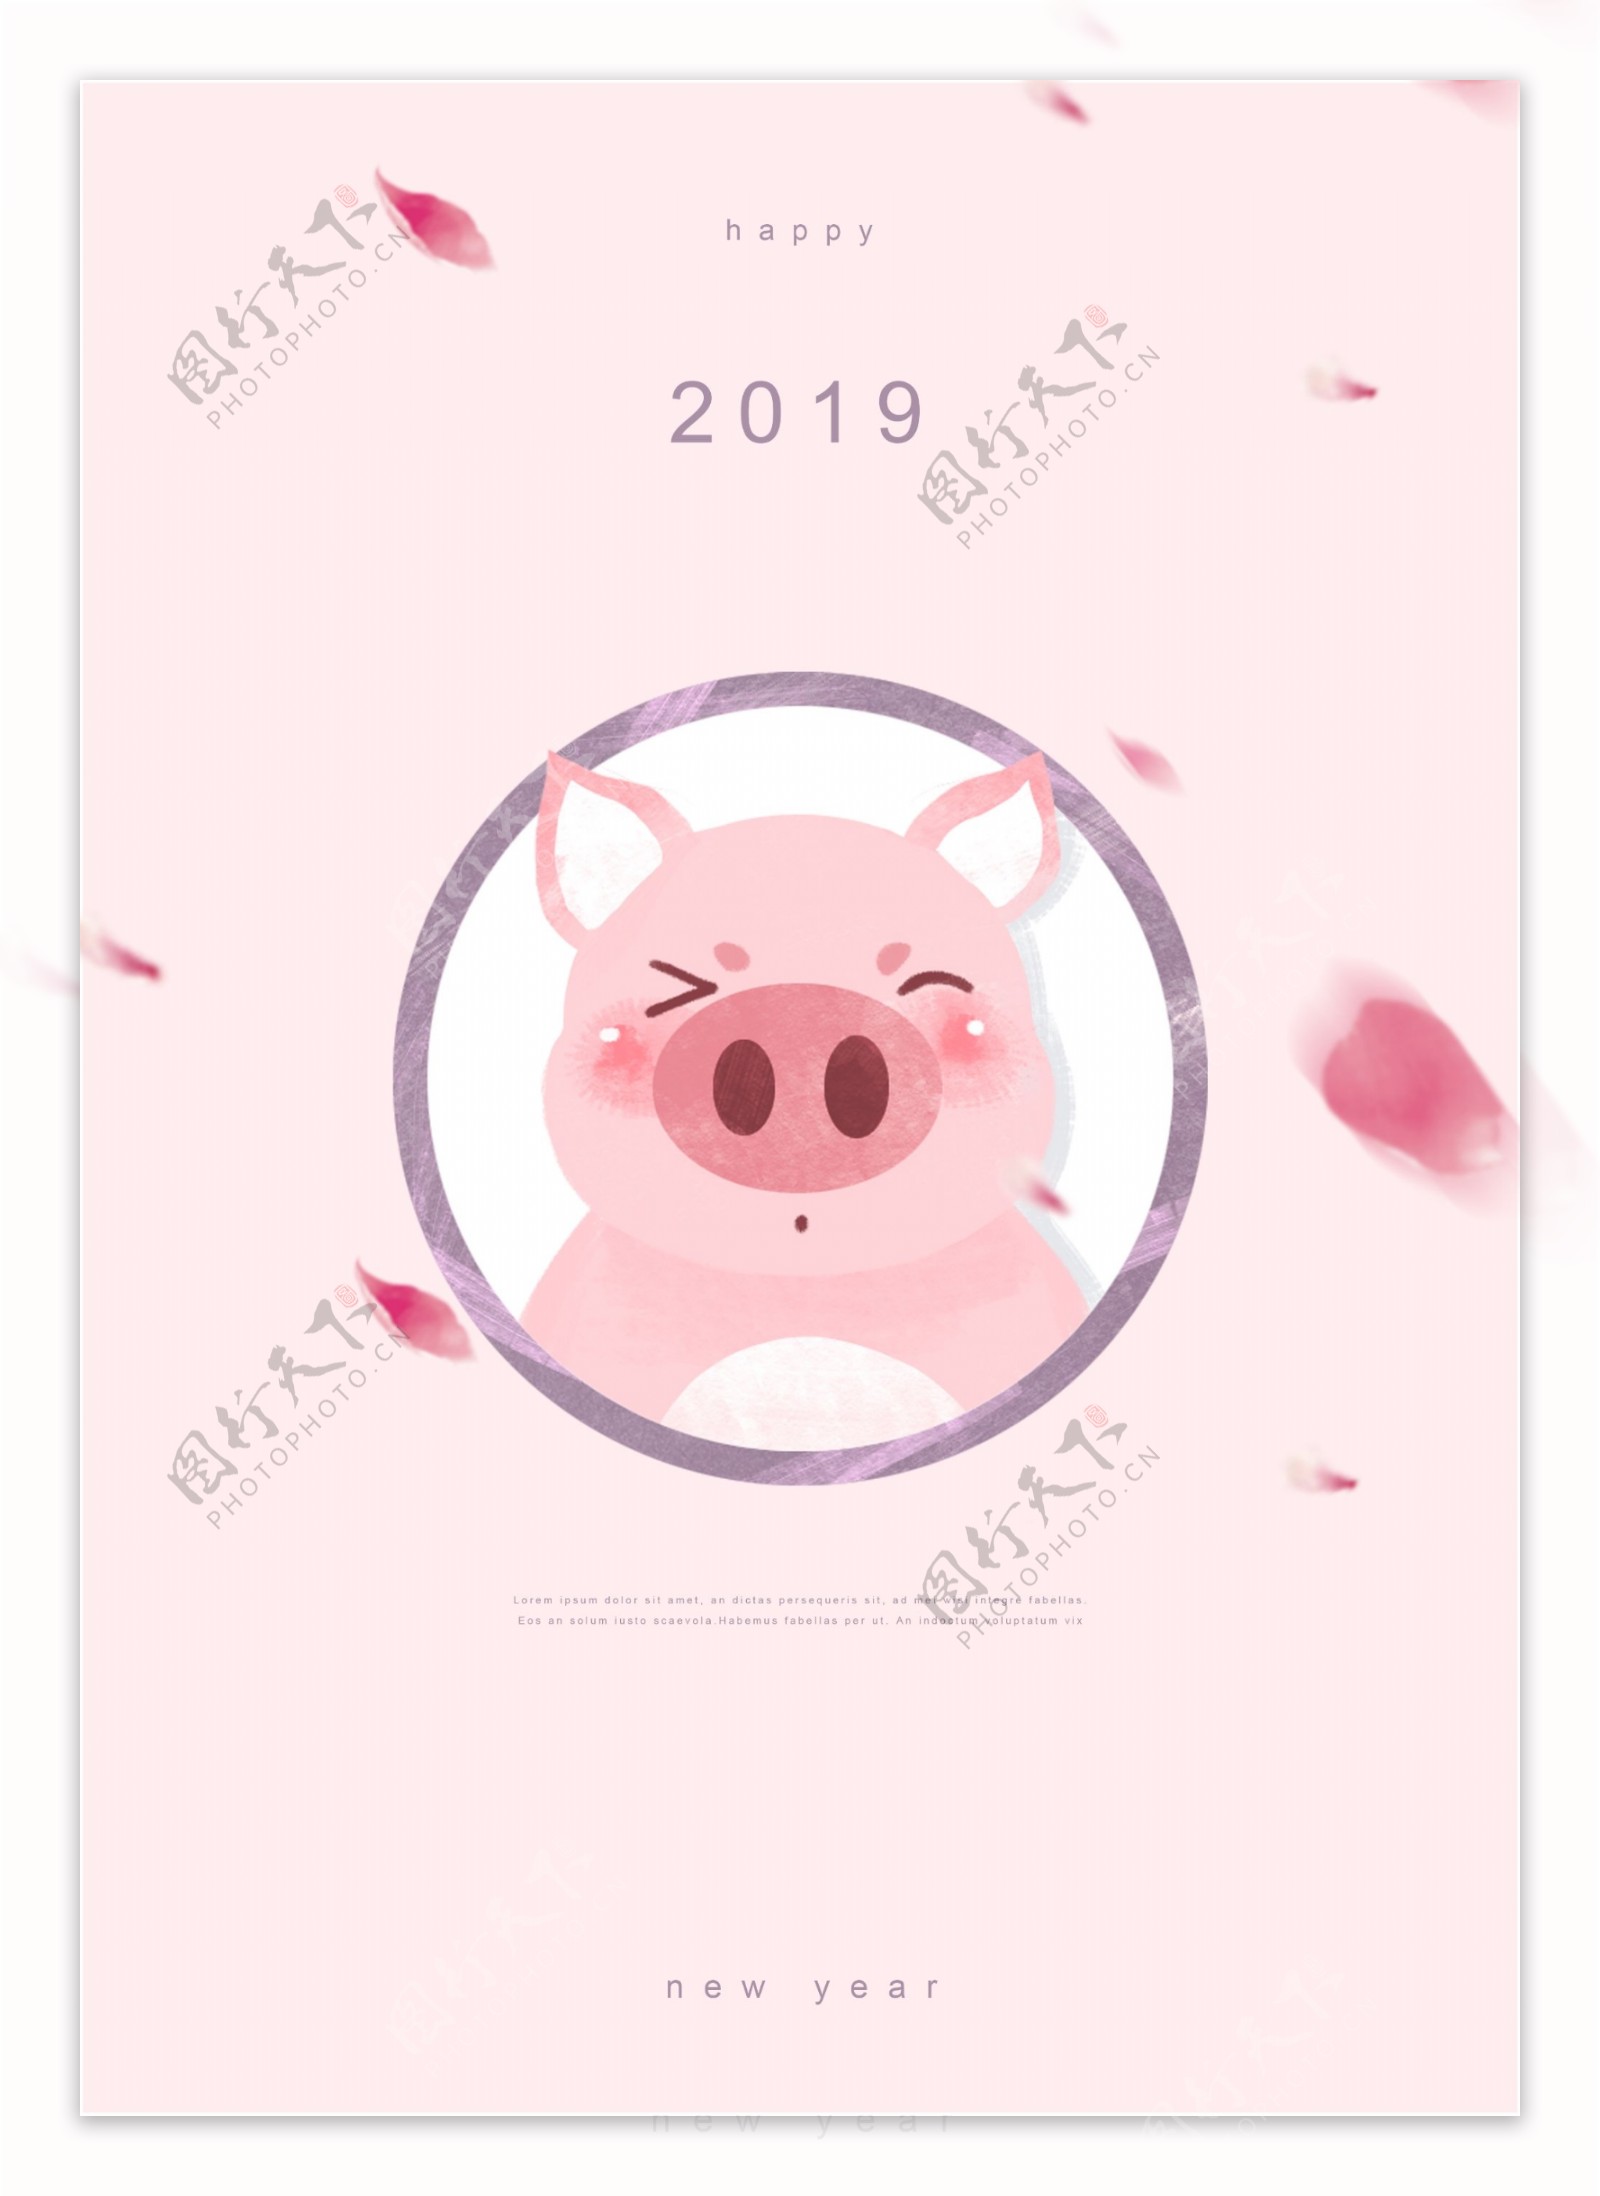 2019年粉红猪海报模板